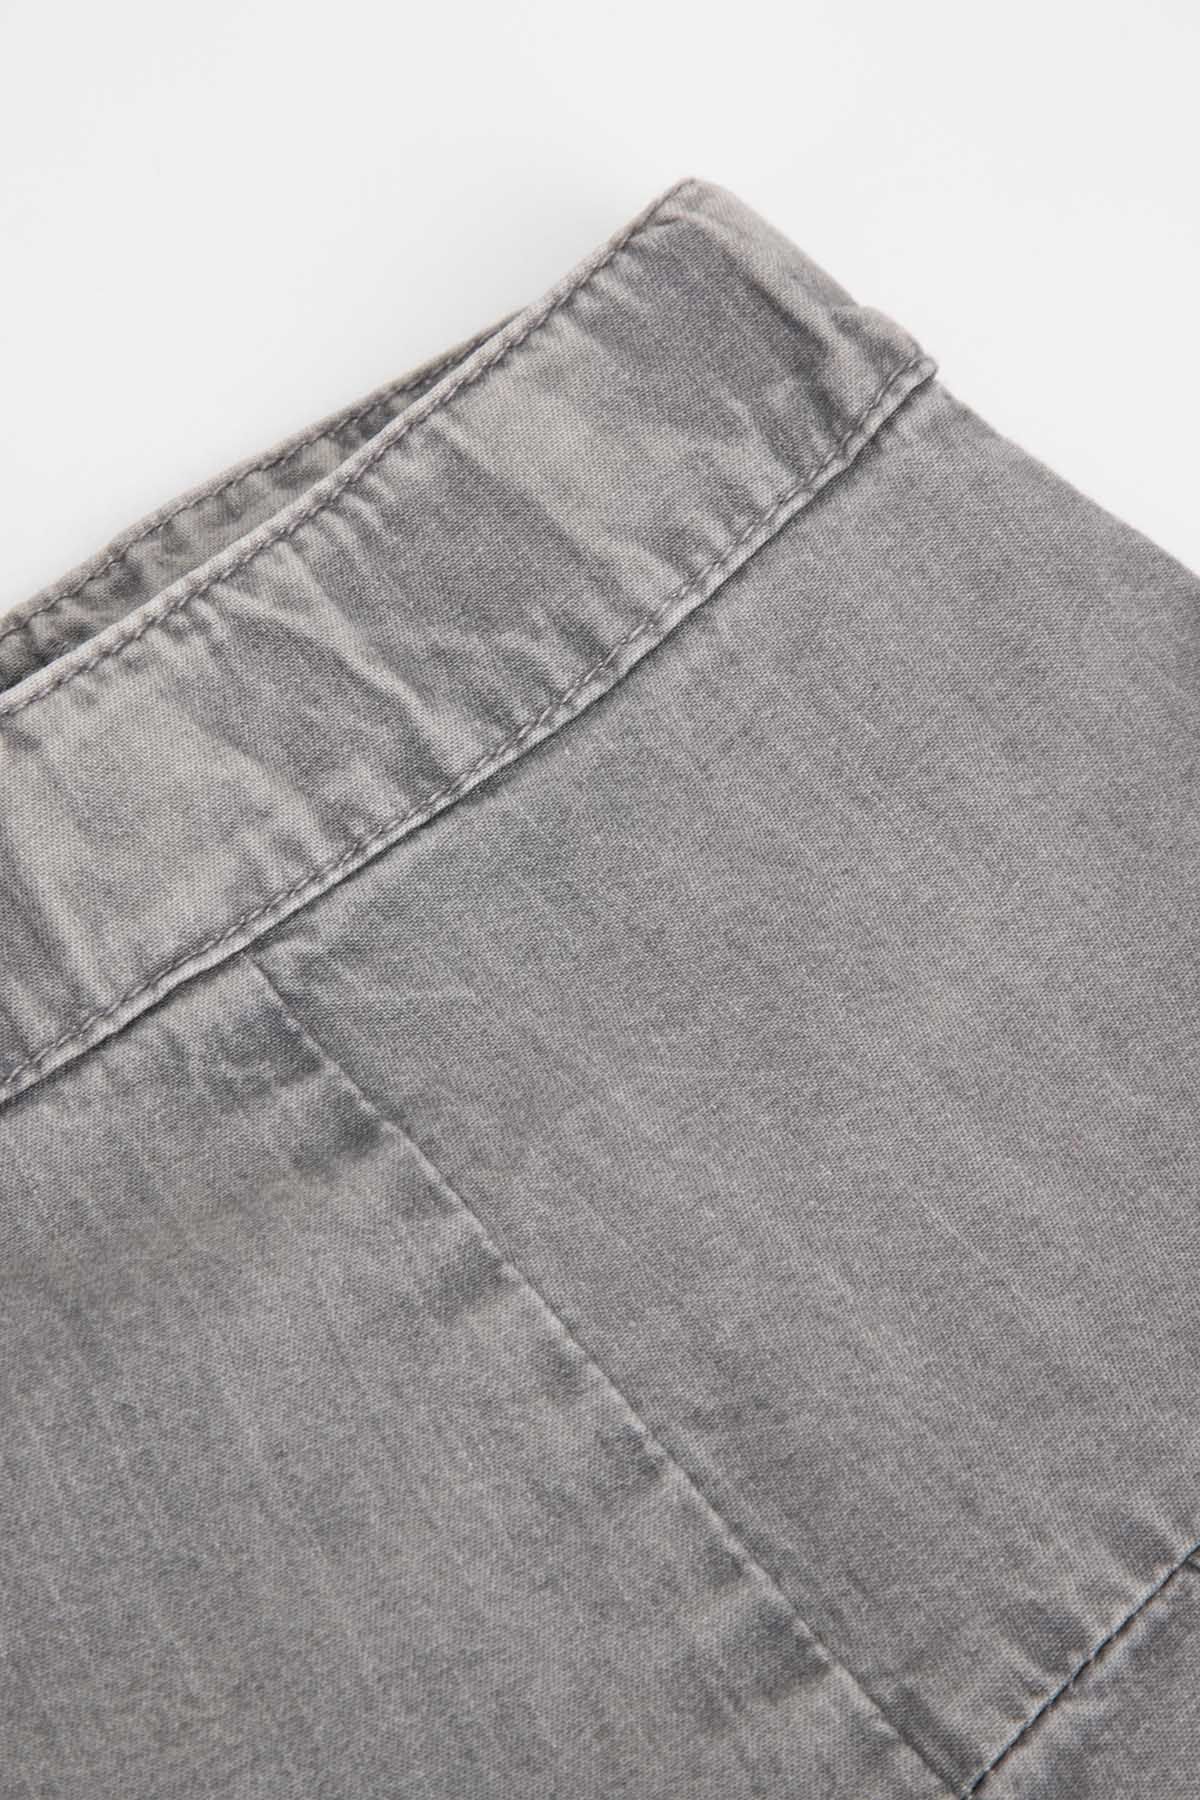 Spódnica tkaninowa szara rozkloszowana z zakładkami 2218551